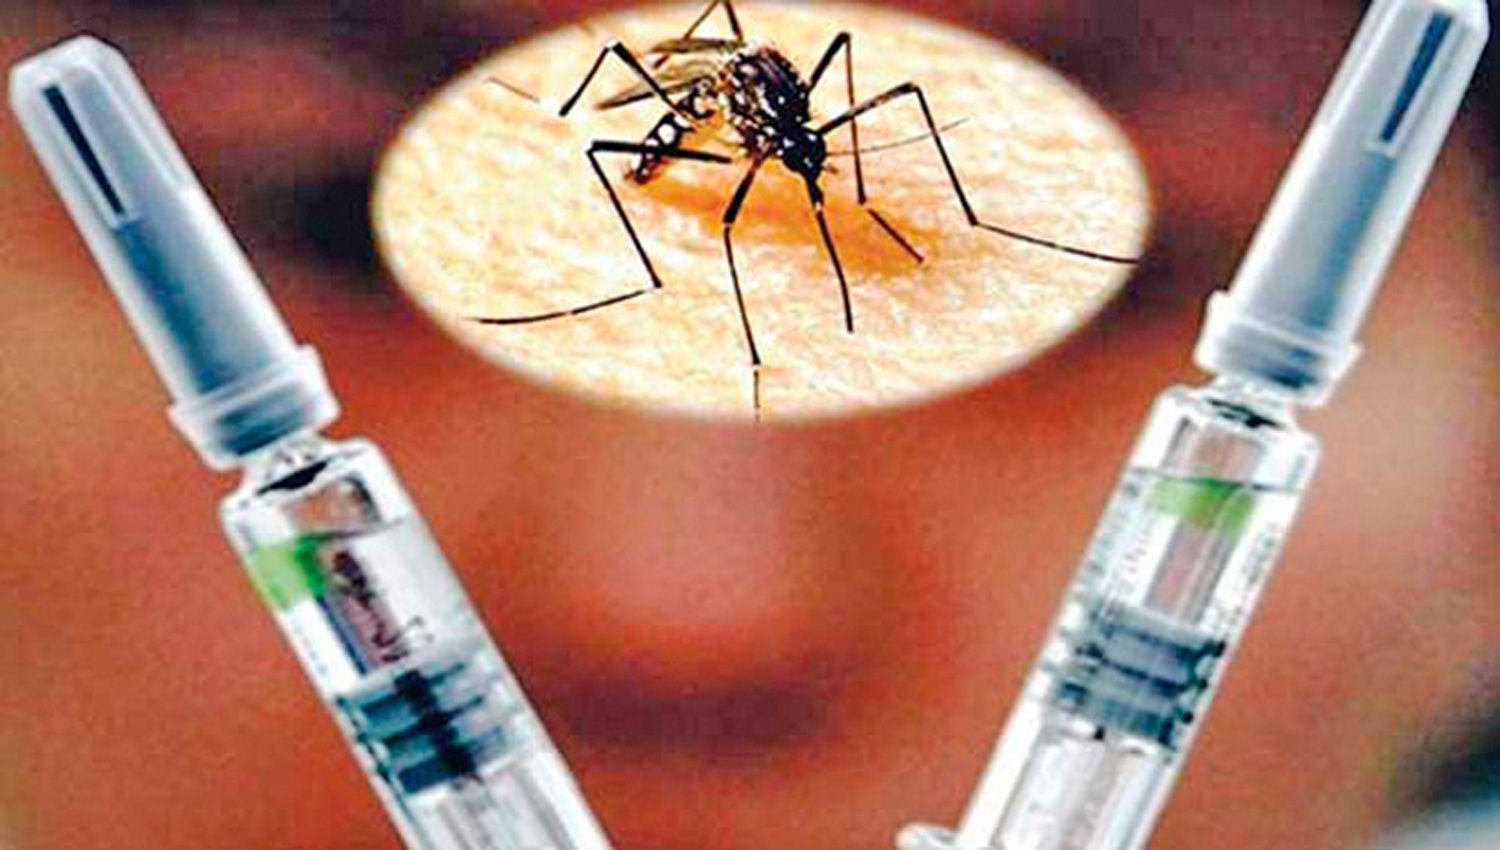 Inician traacutemites de aprobacioacuten de la vacuna contra el dengue